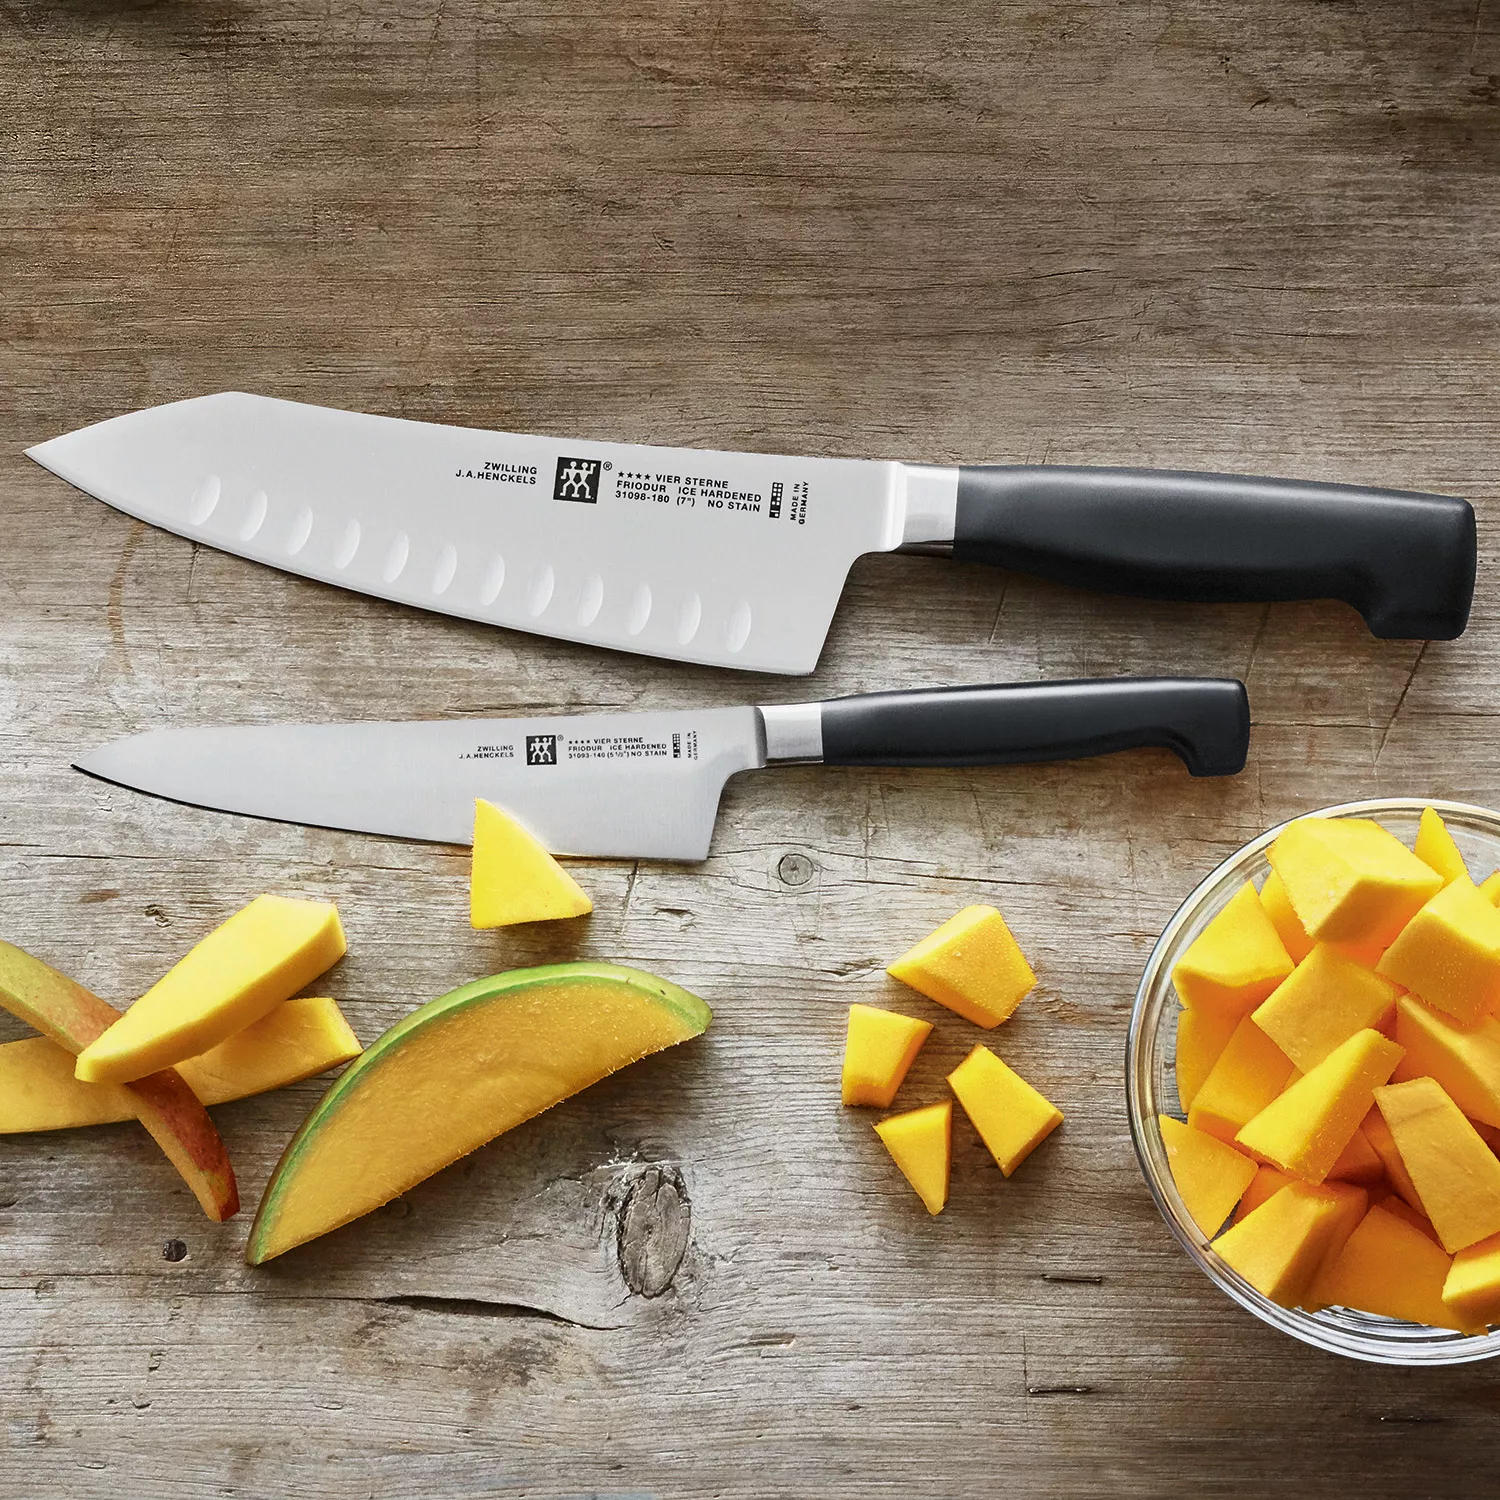 Zyliss 2-Piece Chef & Santoku Knife Set